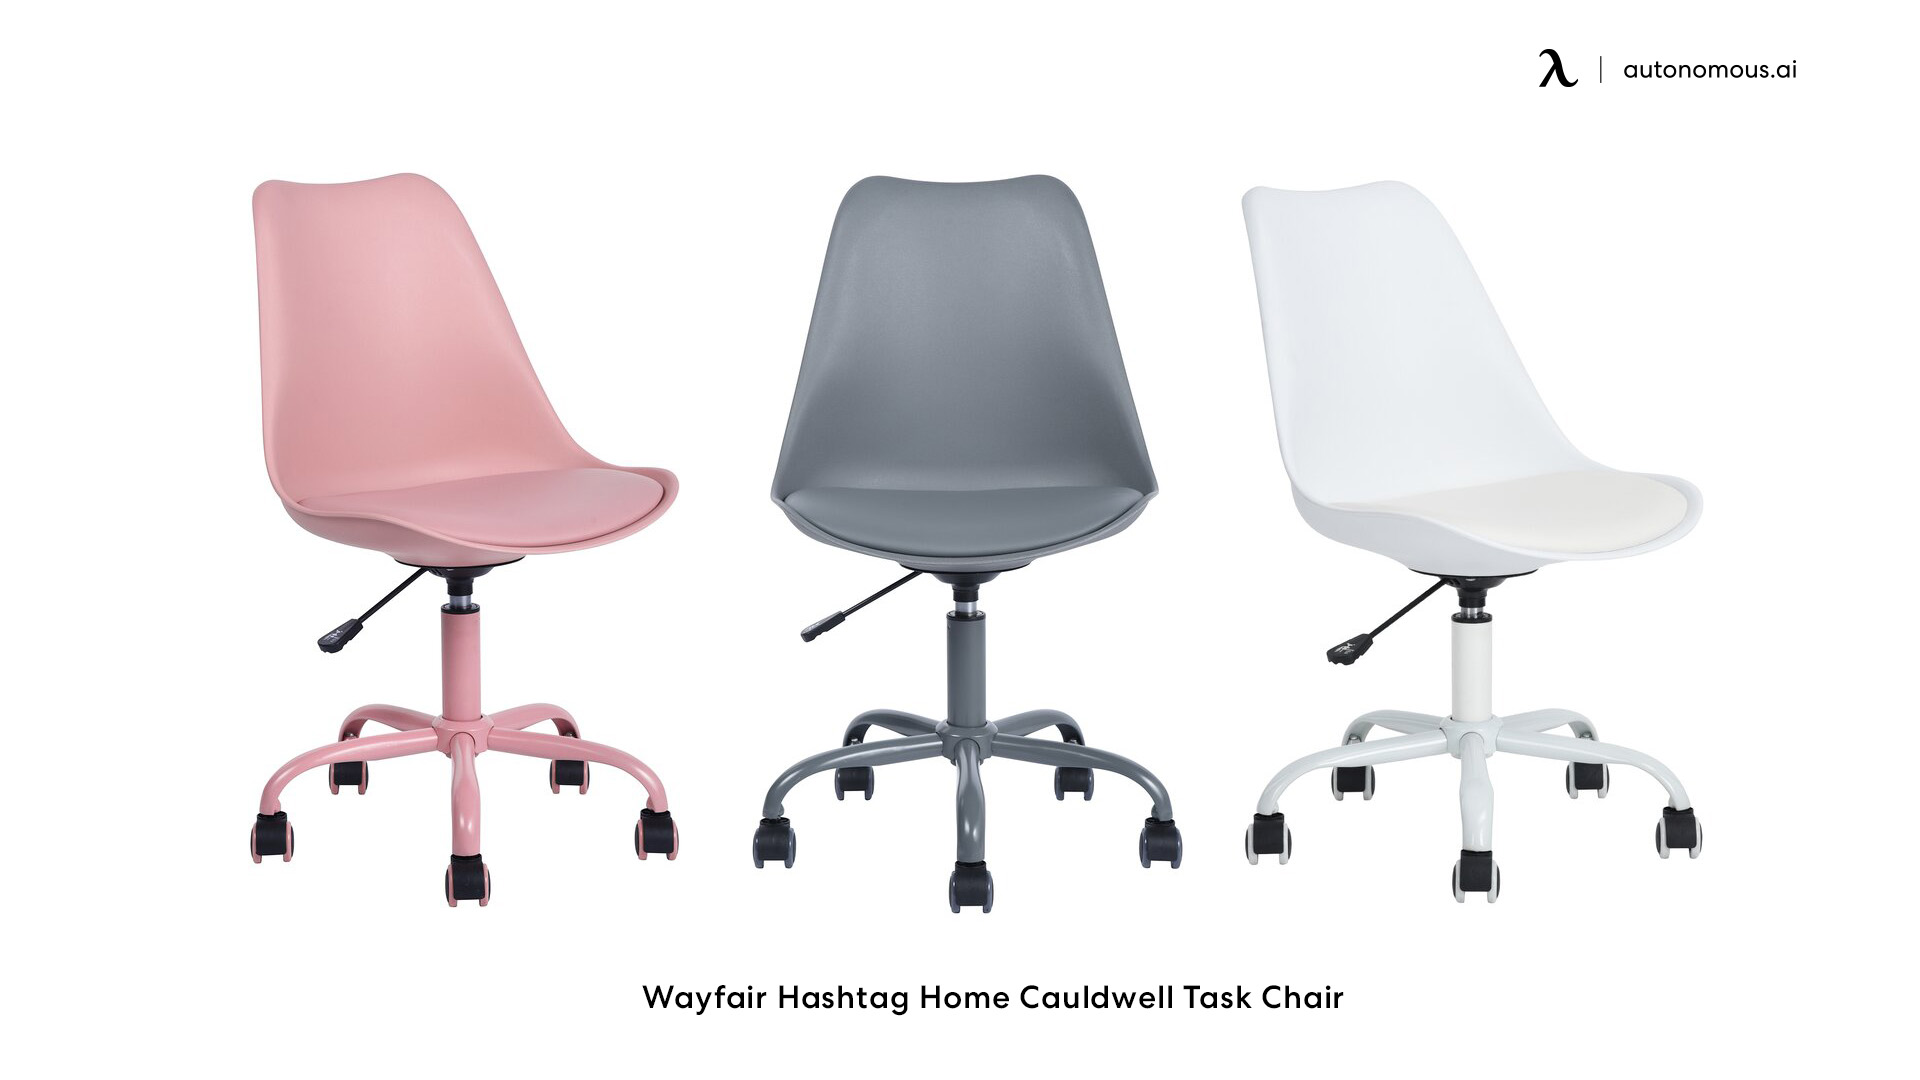 Wayfair Hashtag stylish office chair